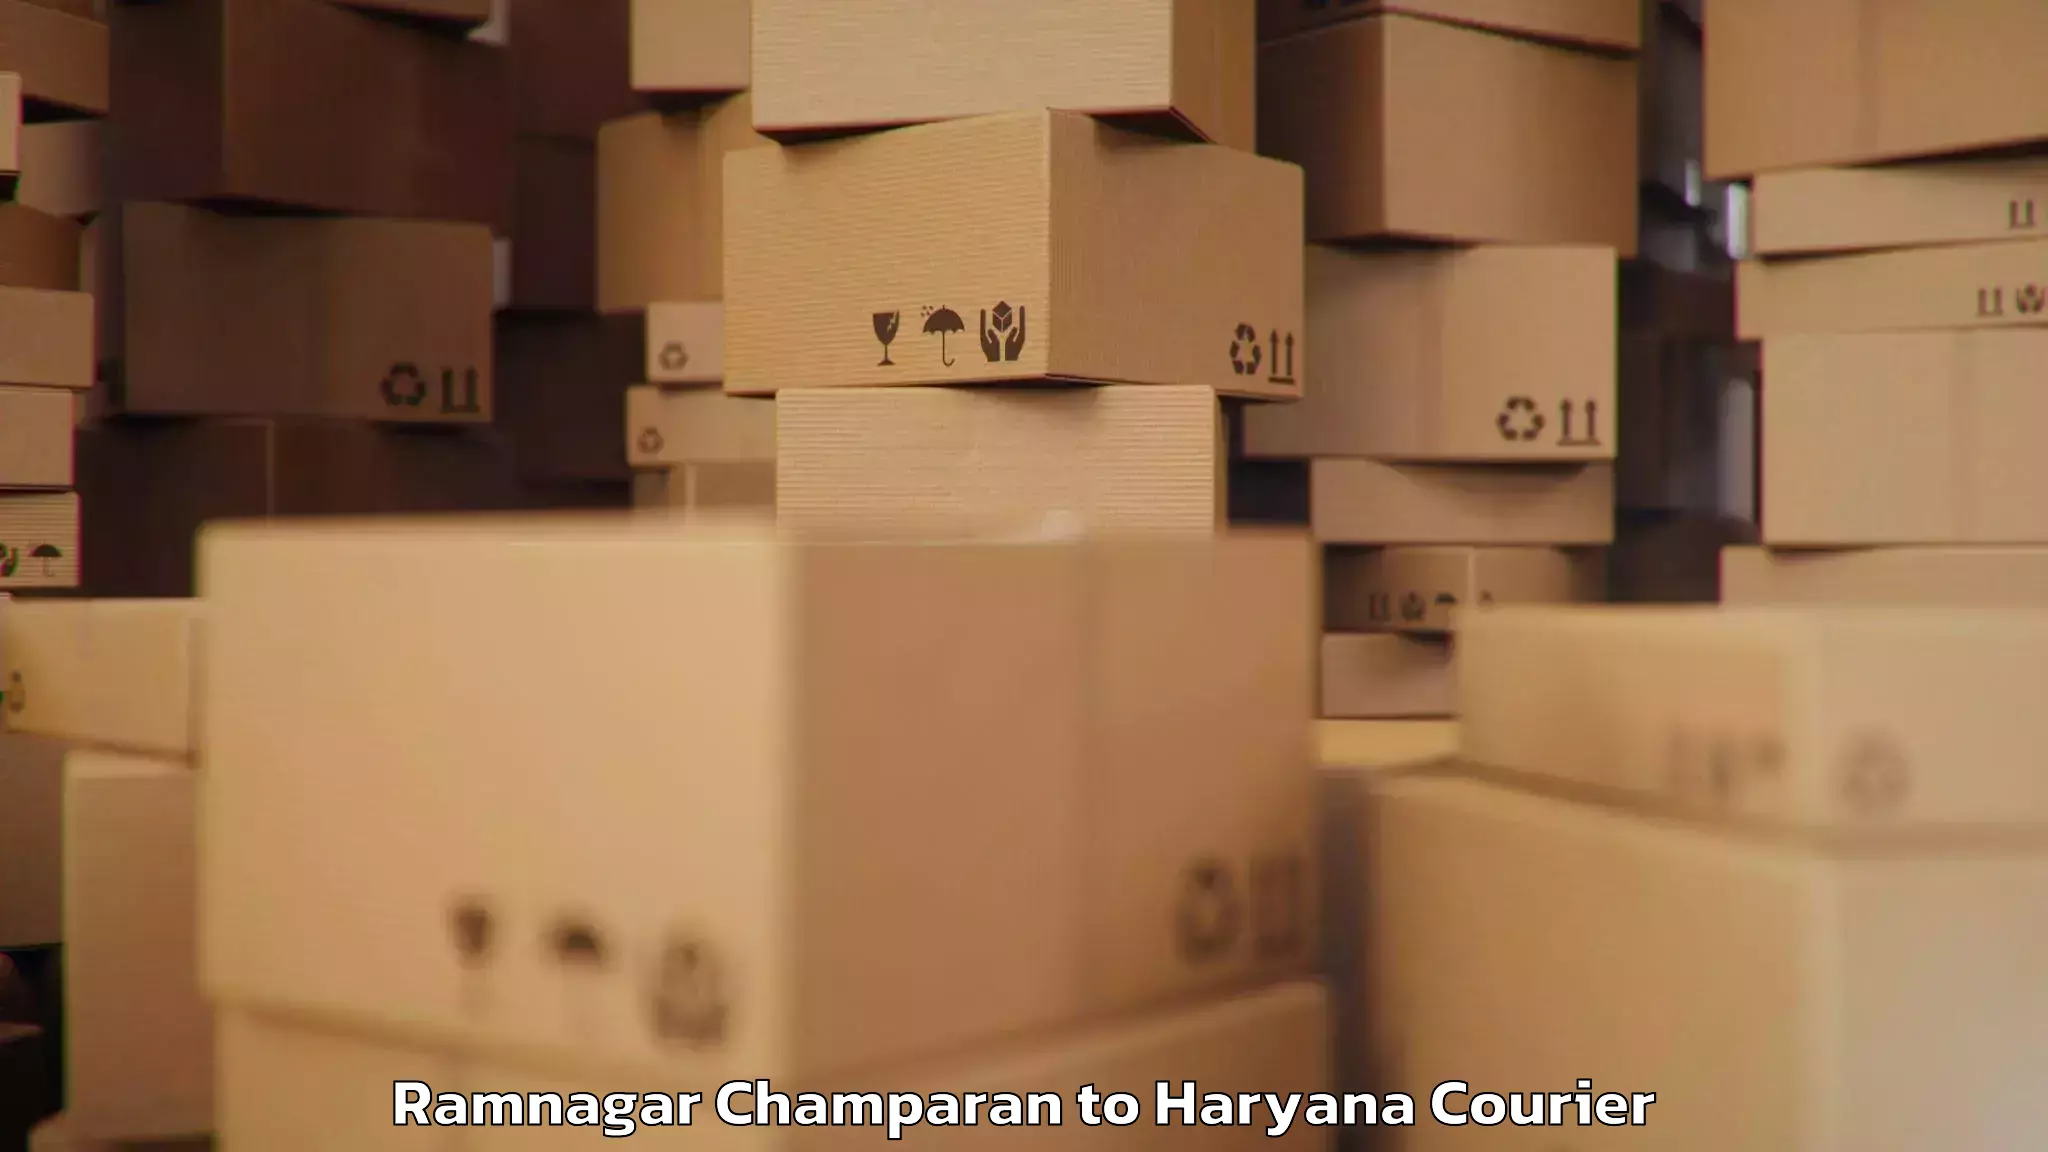 Baggage transport network Ramnagar Champaran to Samalkha